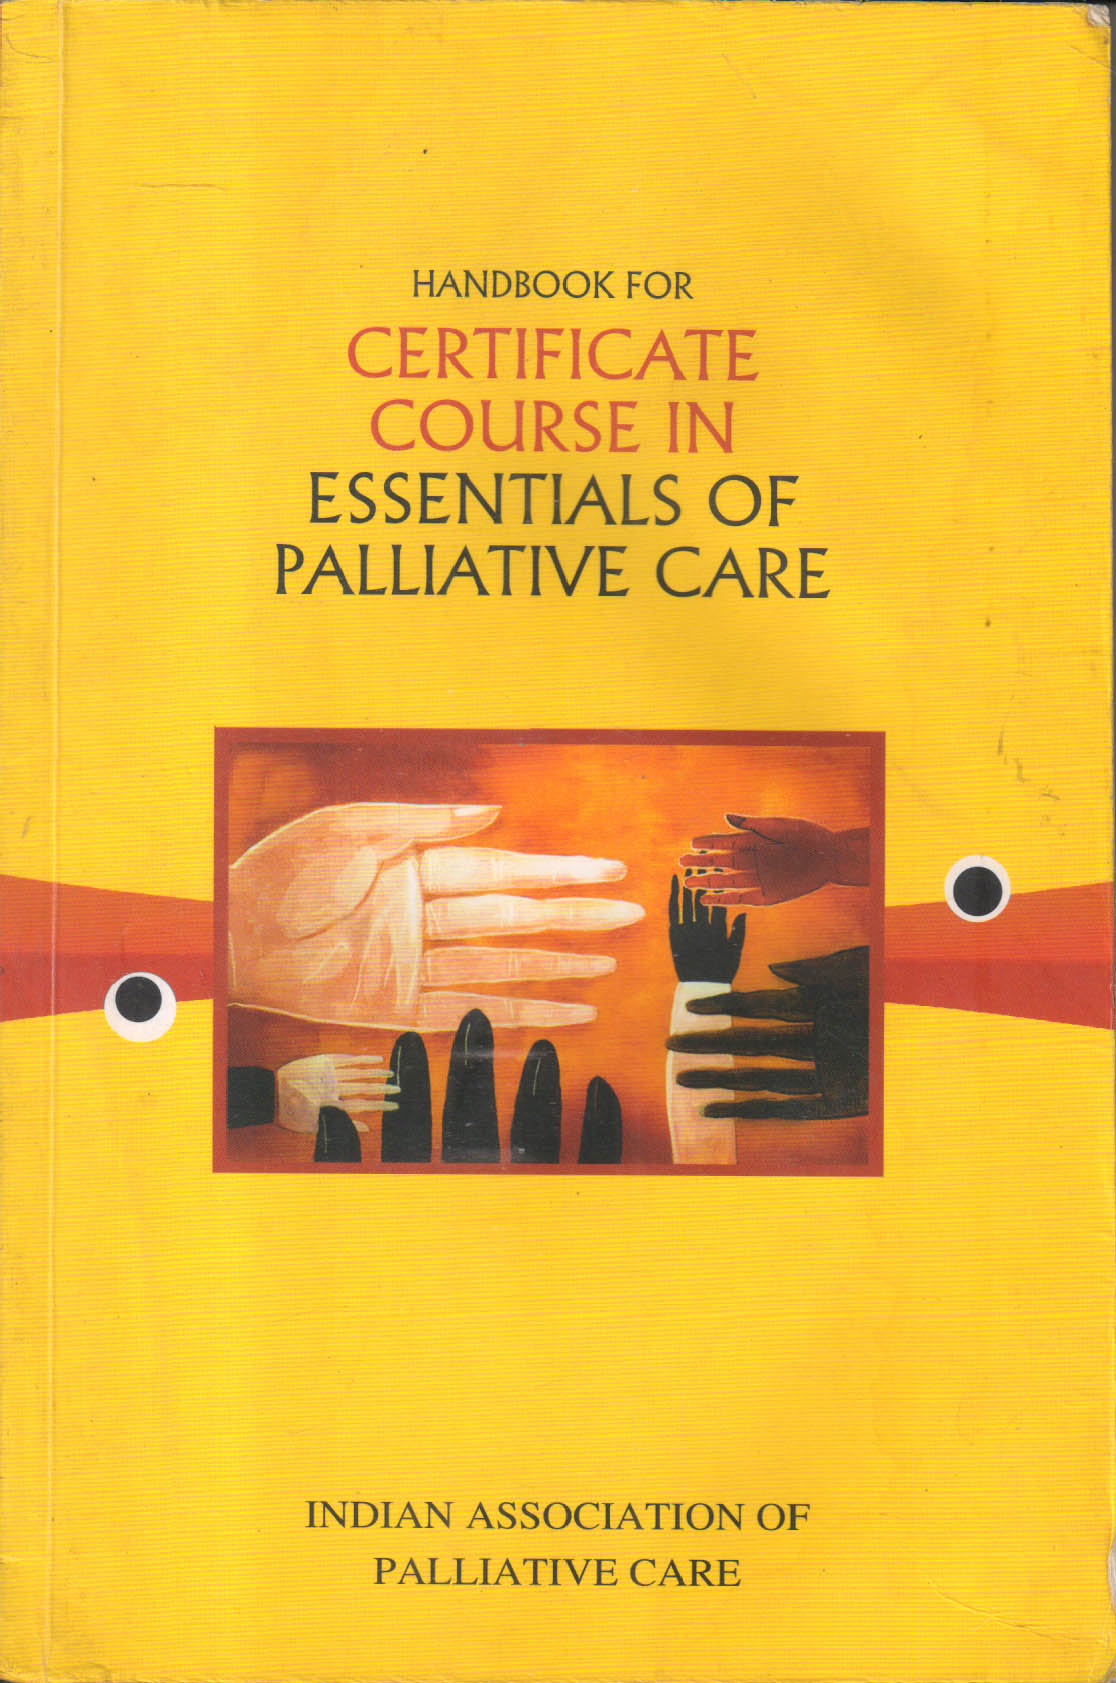 Certificate Course In Essentials Of Palliative